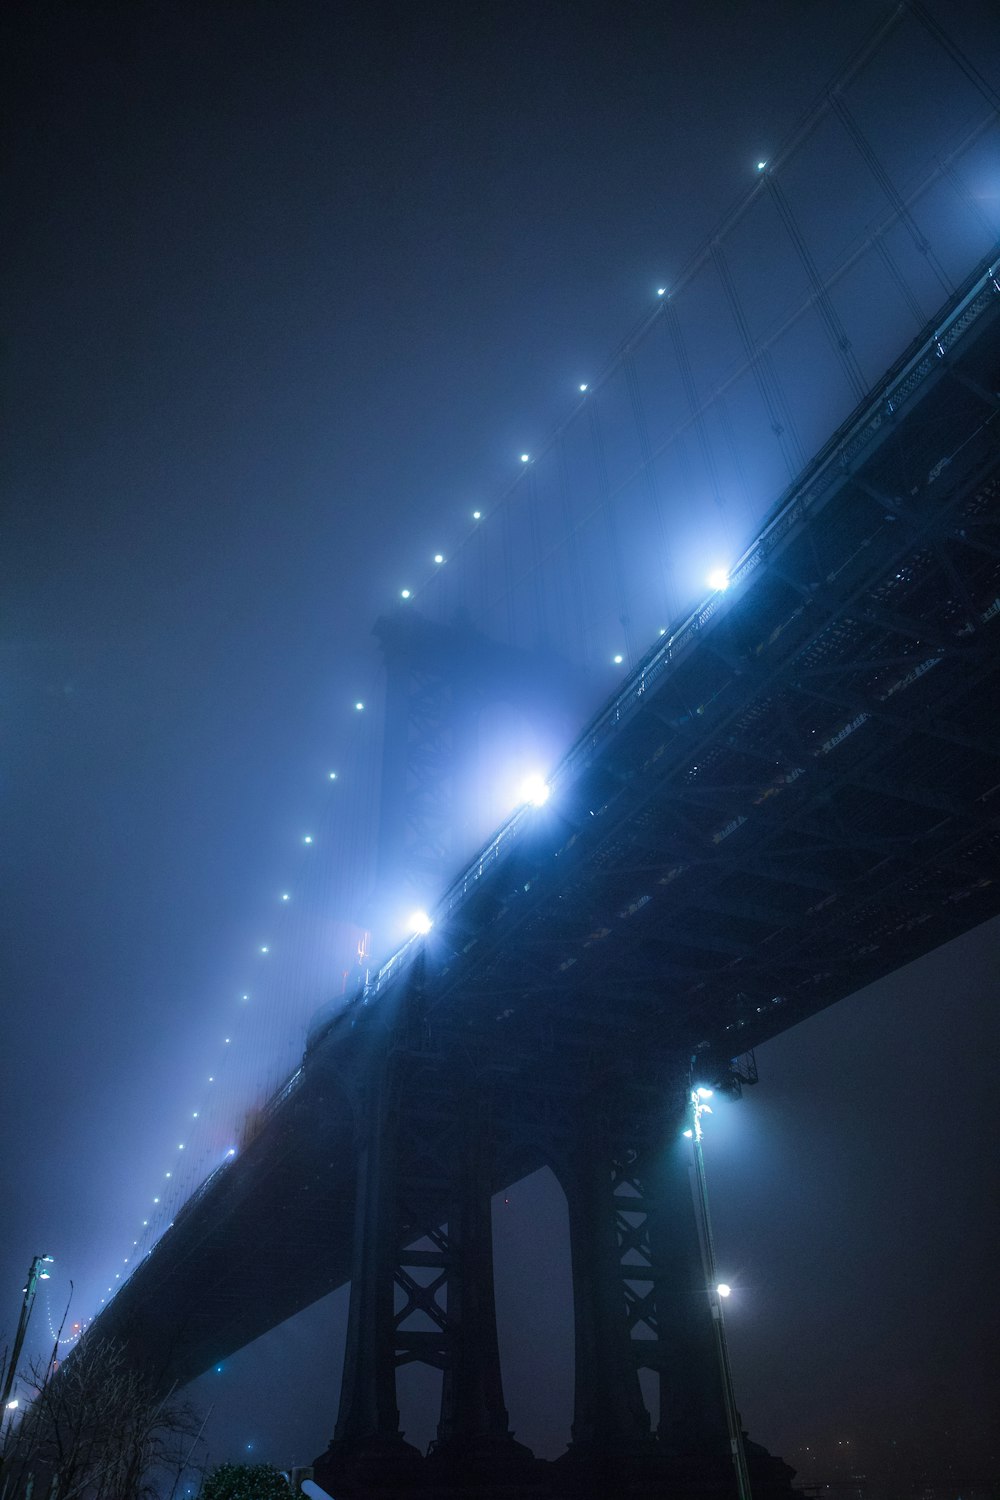 fotografia ad angolo basso del ponte durante la notte